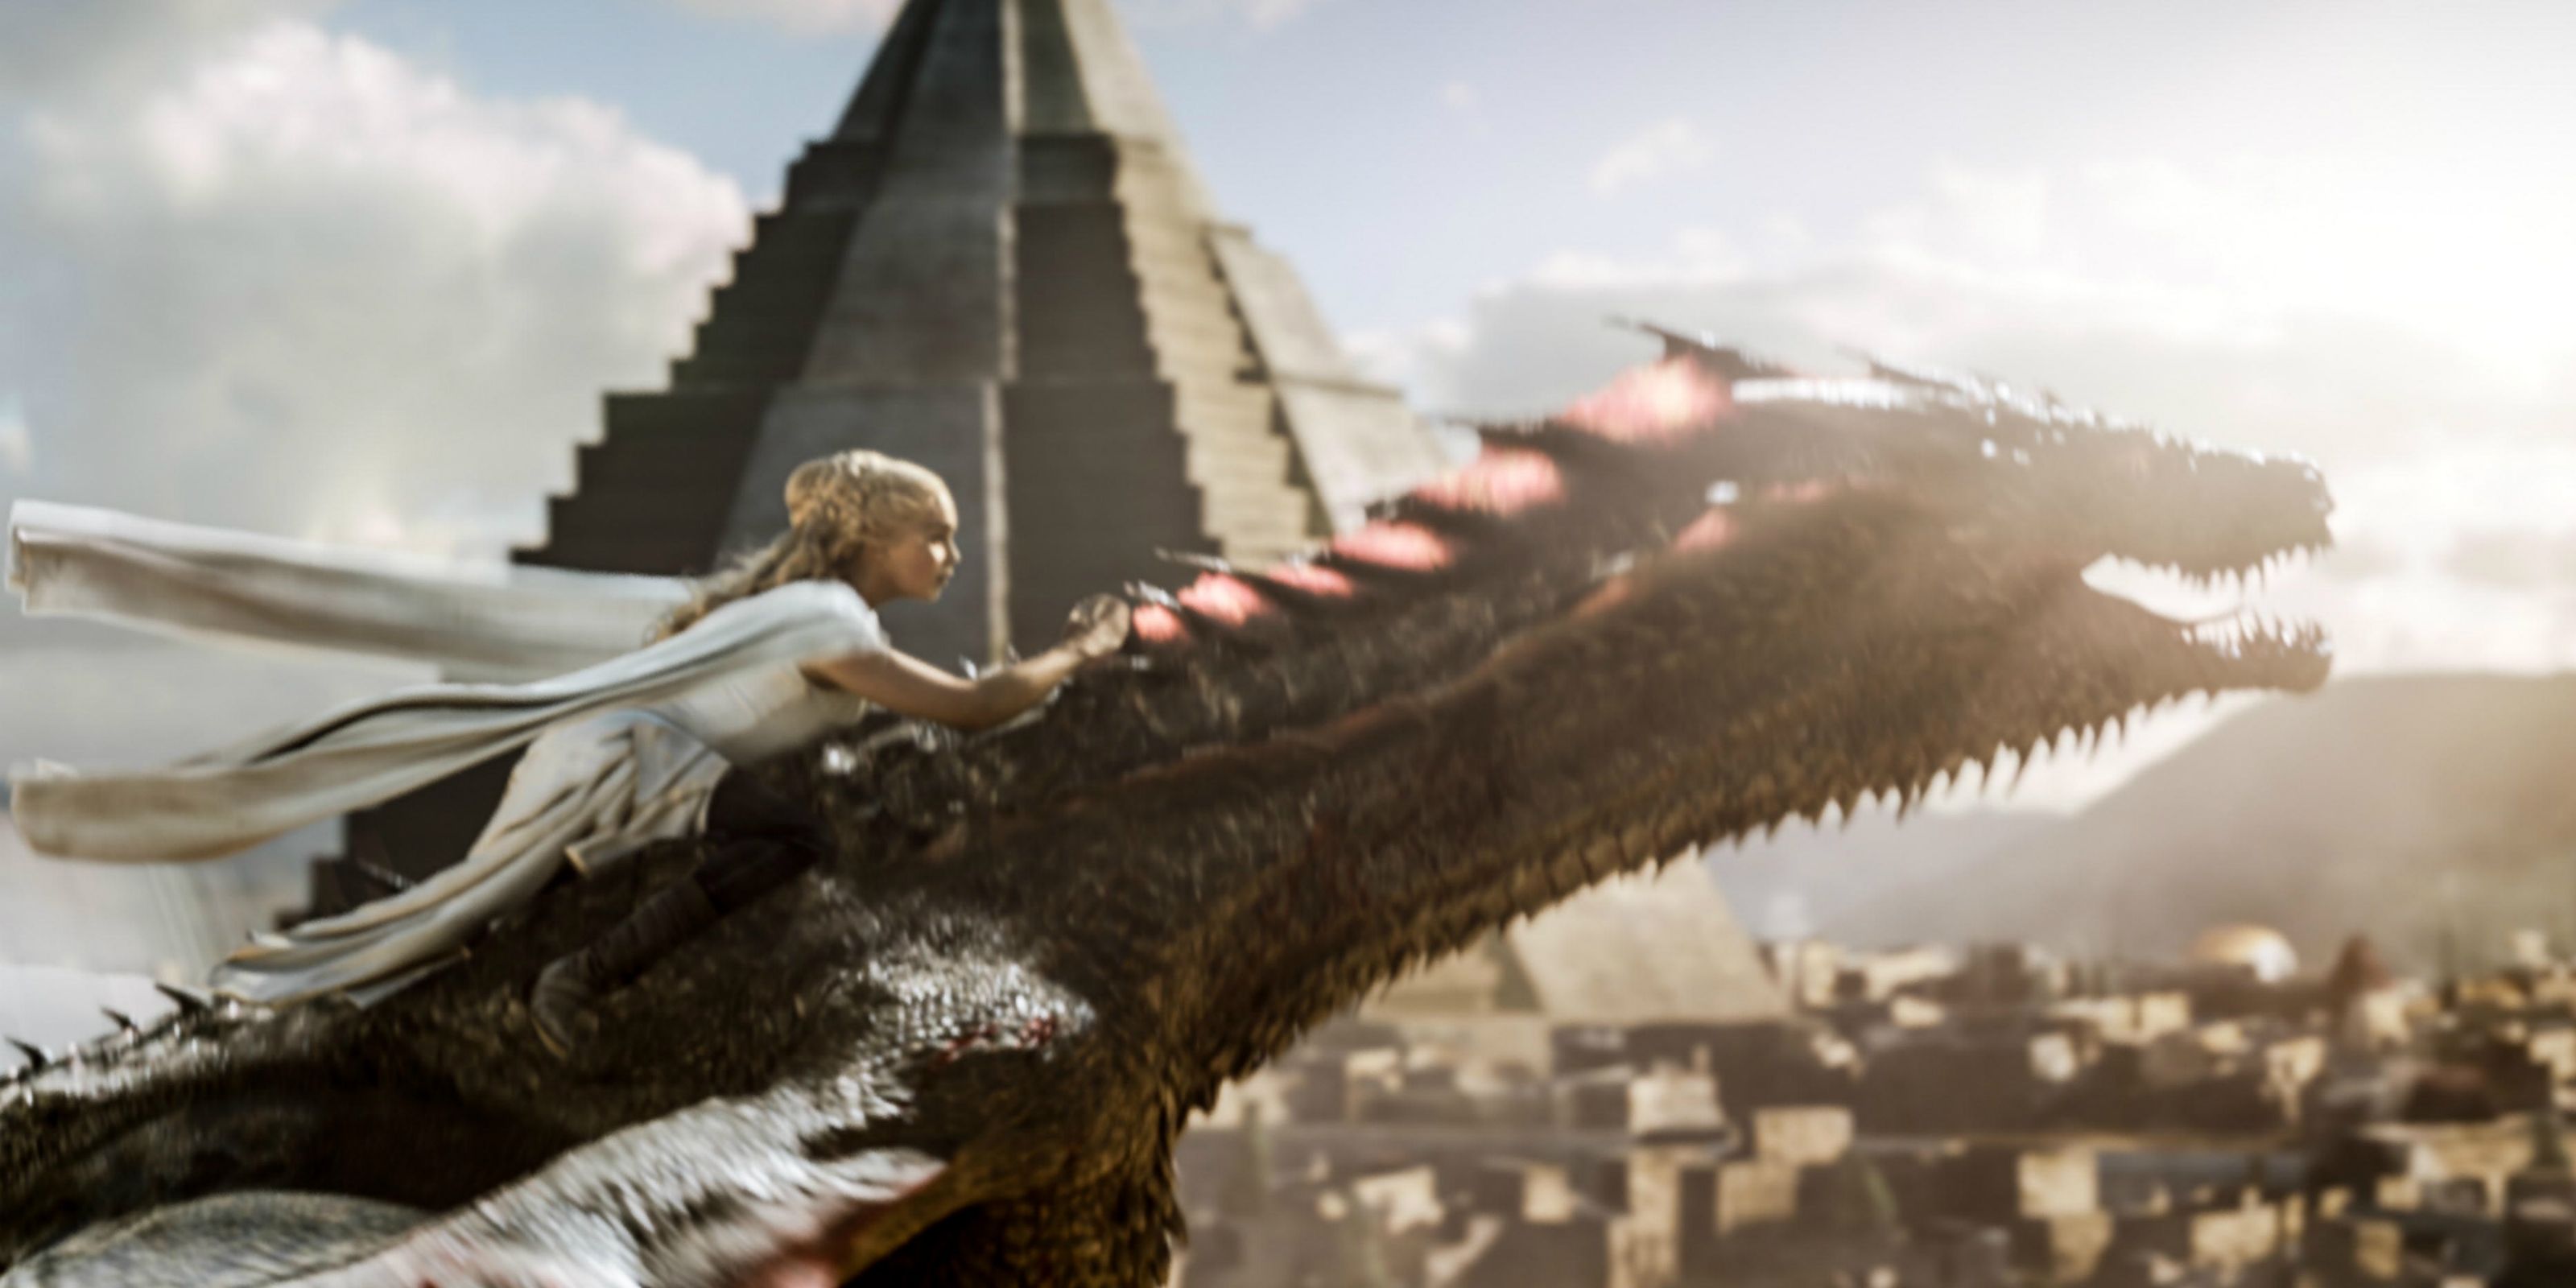 daenerys-targaryen-rides-drogon-her-dragon-on-game-of-thrones